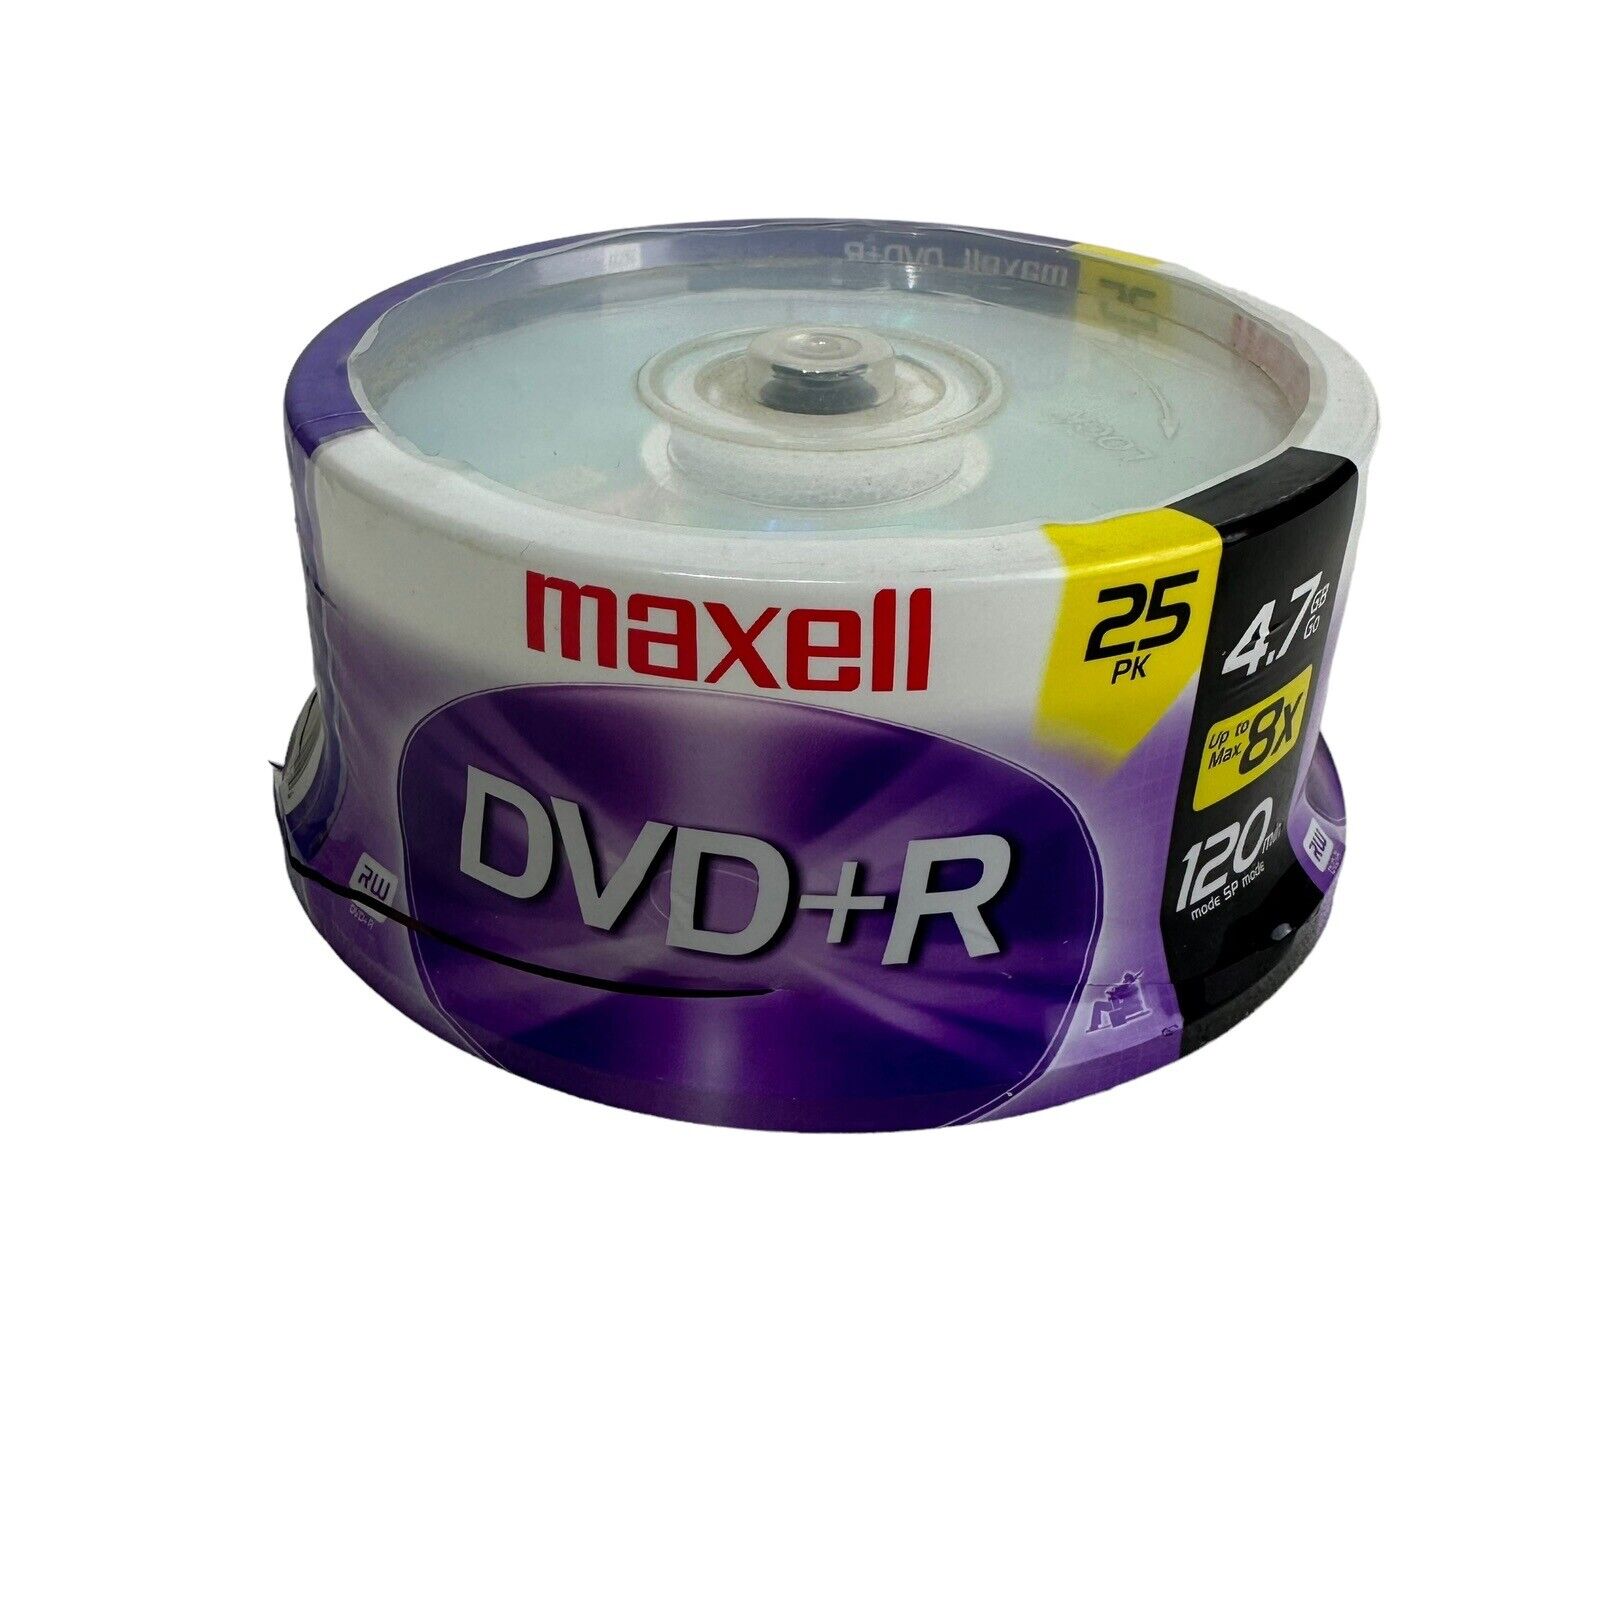 Maxwell DVD-R 4.7 GB 8x 120 Min. 25 Pack